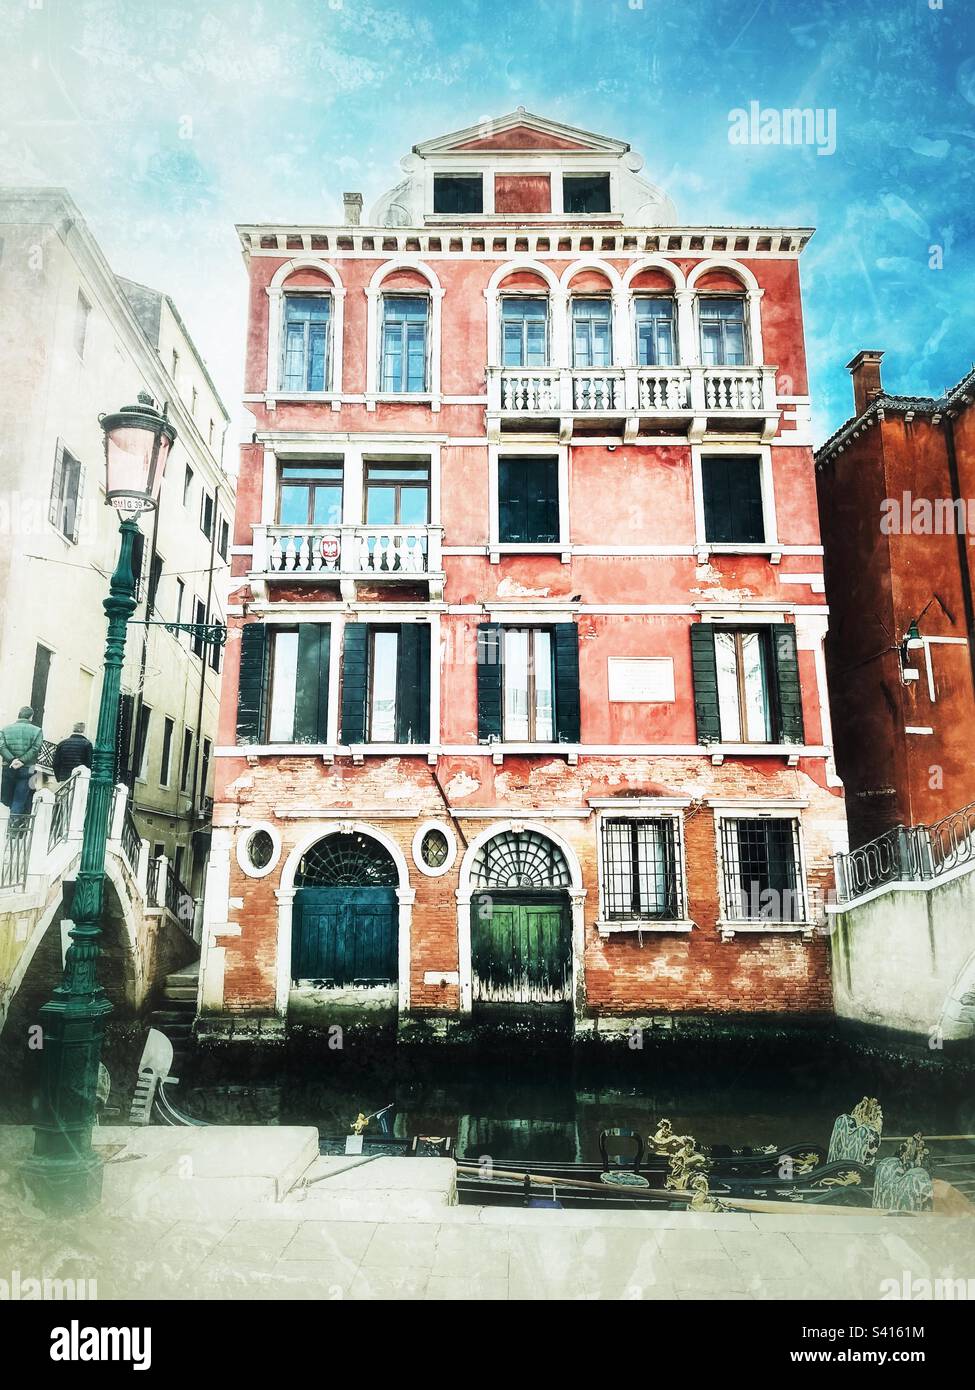 Historischer Palast in Venedig mit blauen und grünen Türen und einer kunstvoll verzierten Gondel vor dem engen Kanal. Bearbeitung in Not. Stockfoto